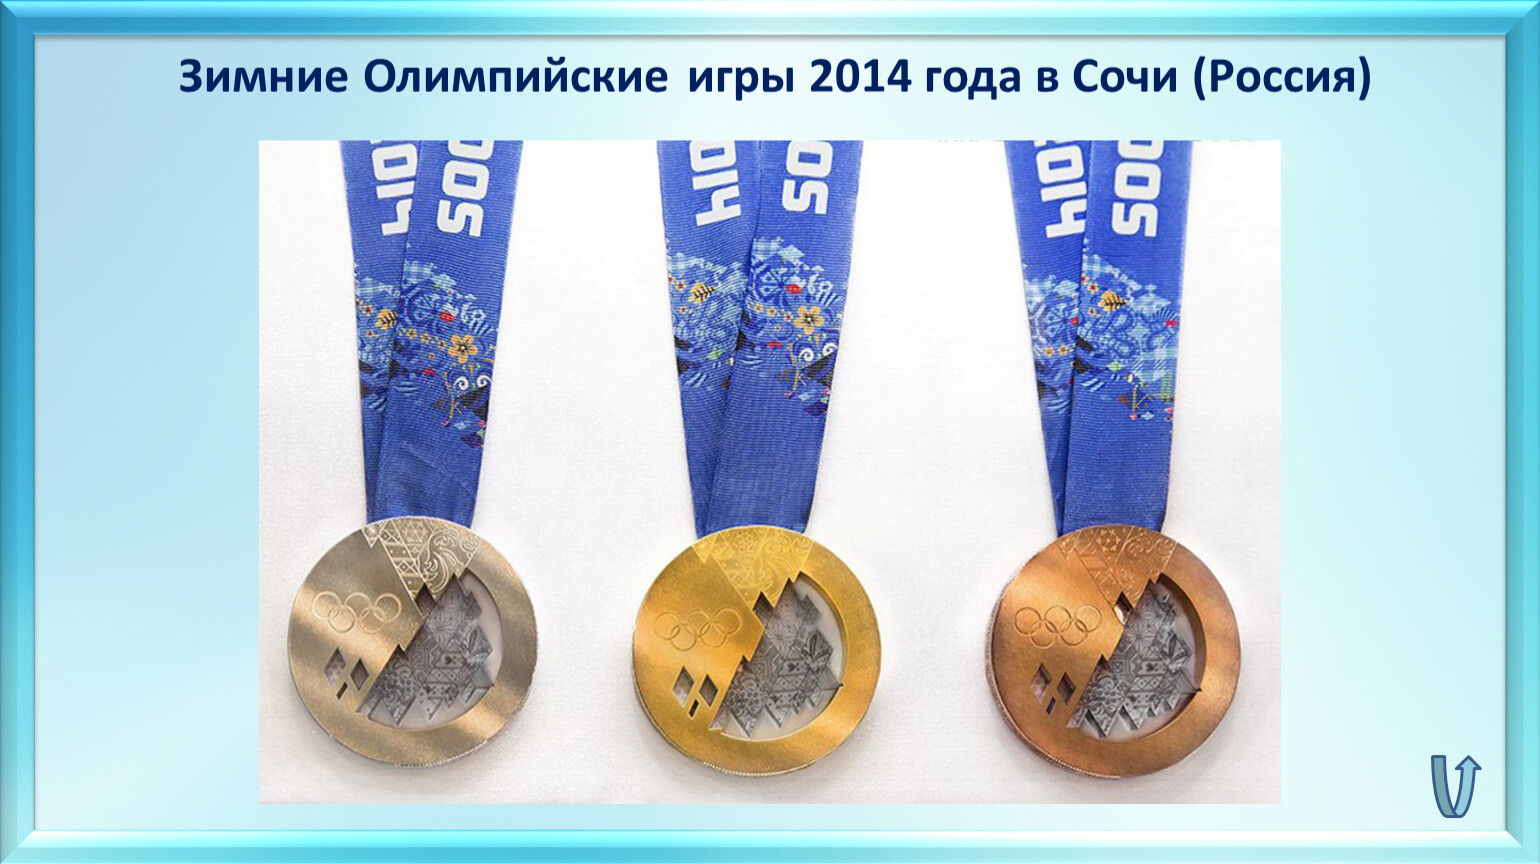 Игры сочи 2014 медали. Медали Олимпийских игр 2014. Медали Сочи 2014. Олимпийские медали Сочи.